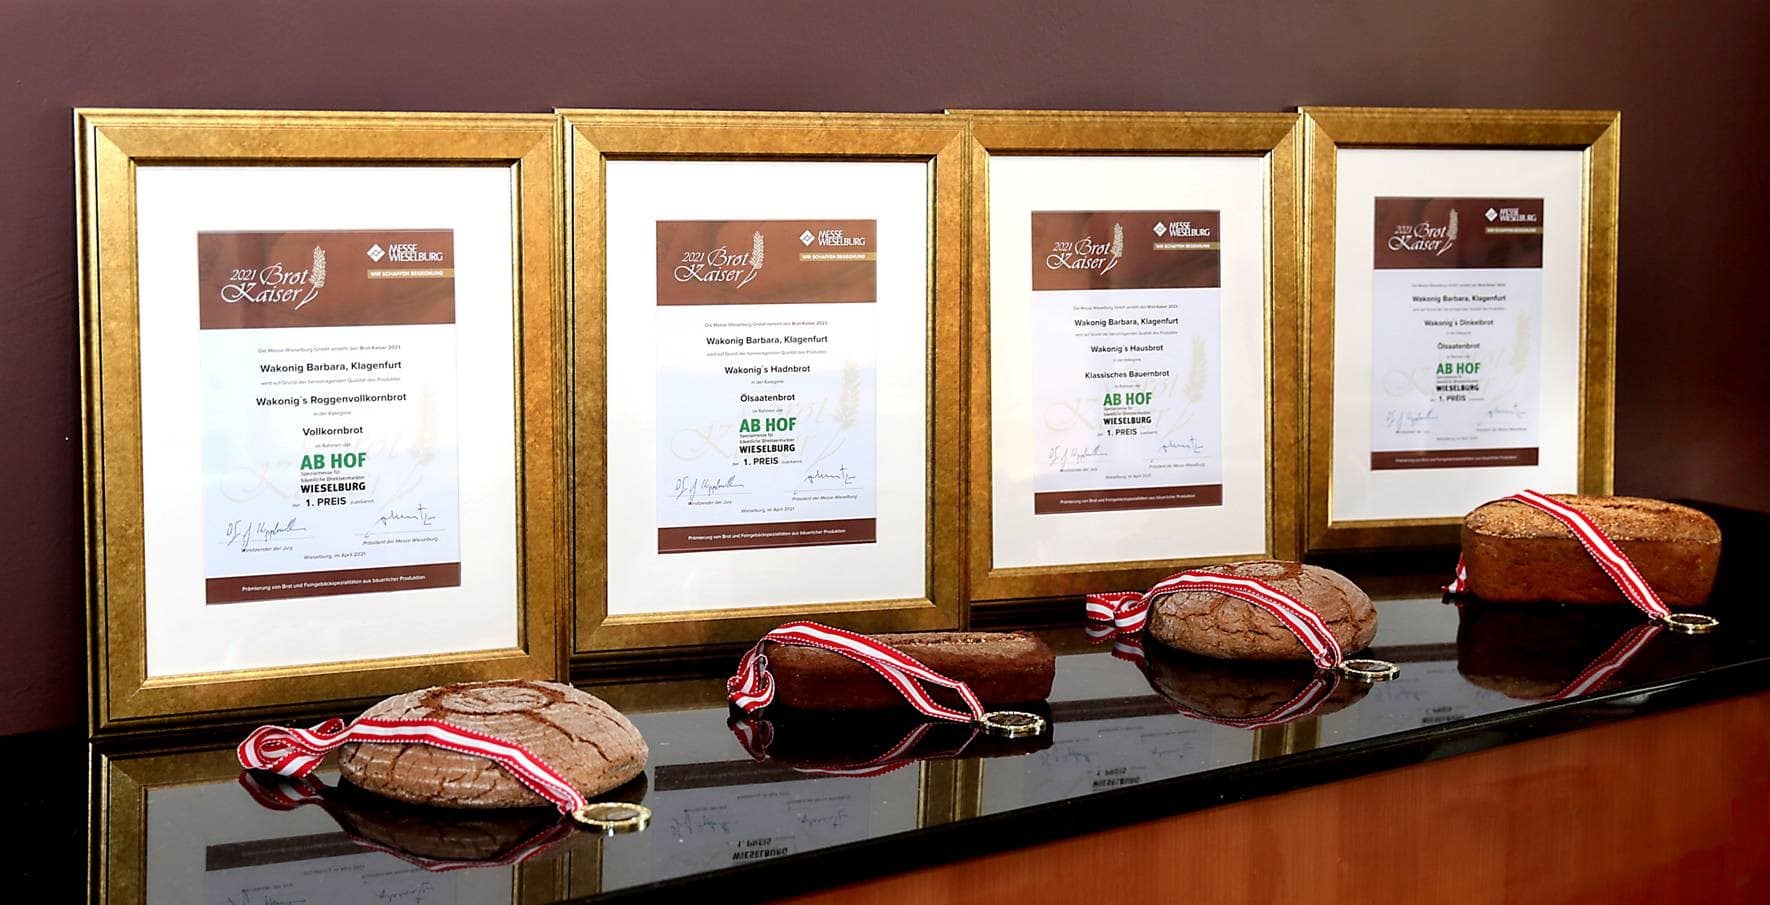 vier Auszeichnungen für verschiedene Brotsorten der Bäckerei Wakonig, sie haben Preise für Roggenvollkornbrot, Ölsaatenbrot, Klassisches Bauernbrot erhalten